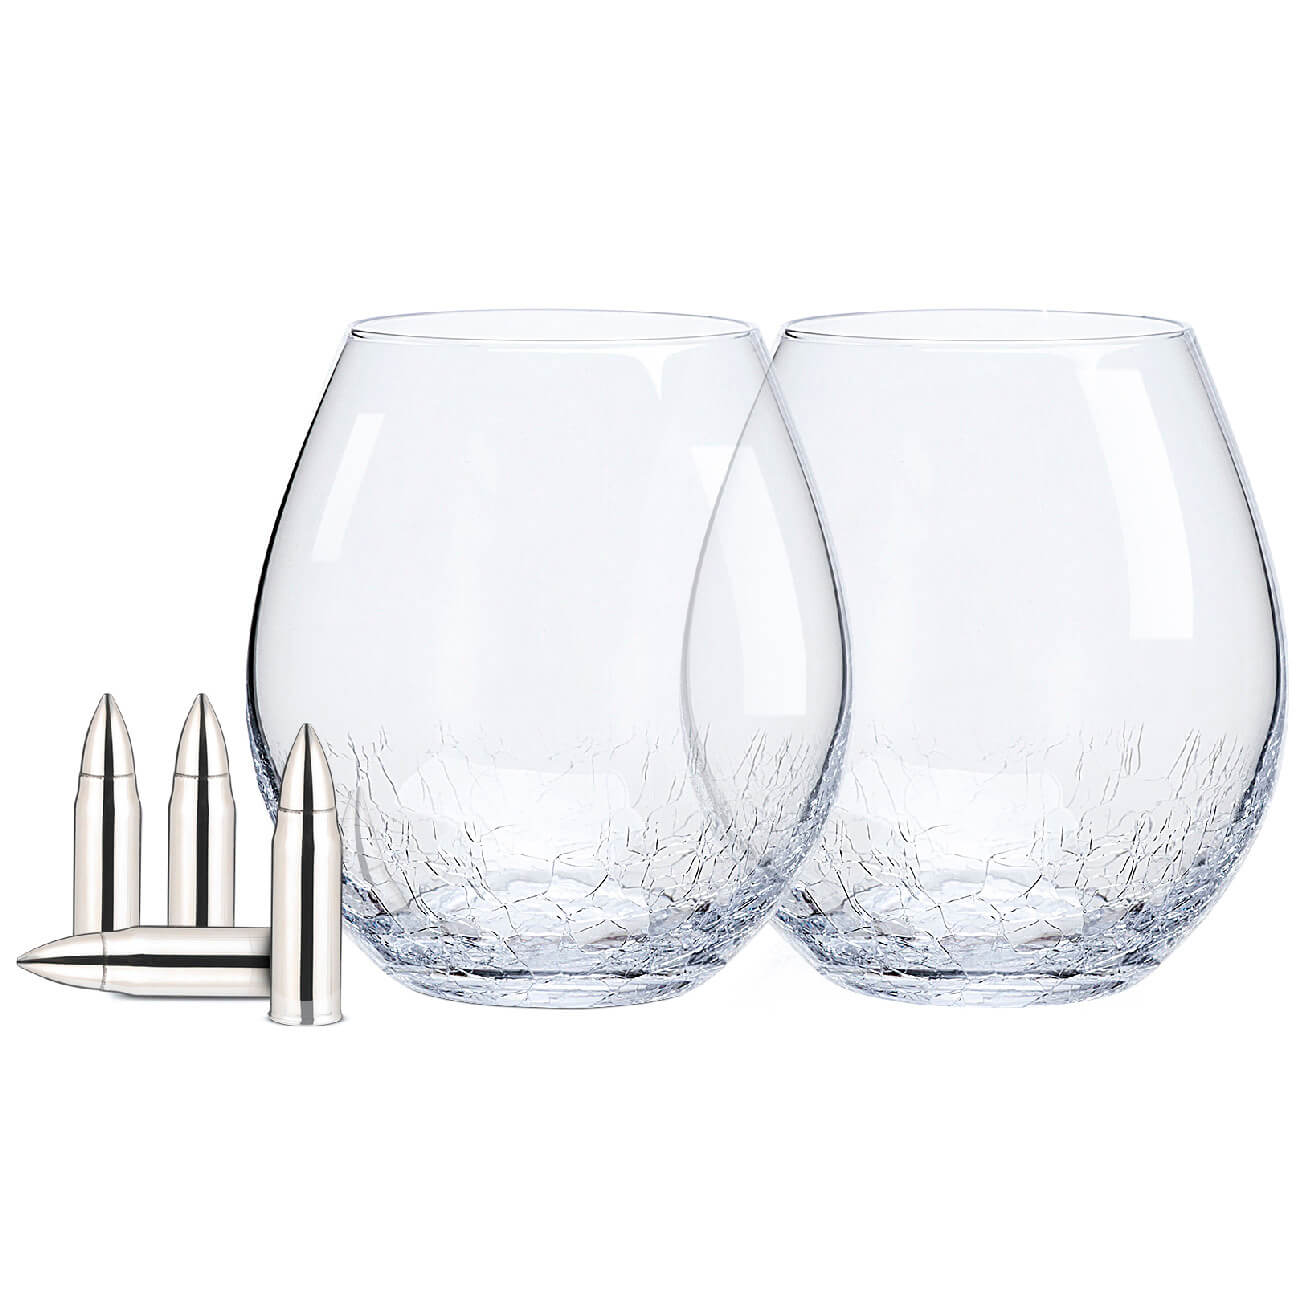 Набор для виски, 2 перс, 6 пр, стаканы/кубики, стекло/сталь, Кракелюр, Пули, Bullet набор для виски 1 перс 4 пр стакан кубики стекло р гранит peak